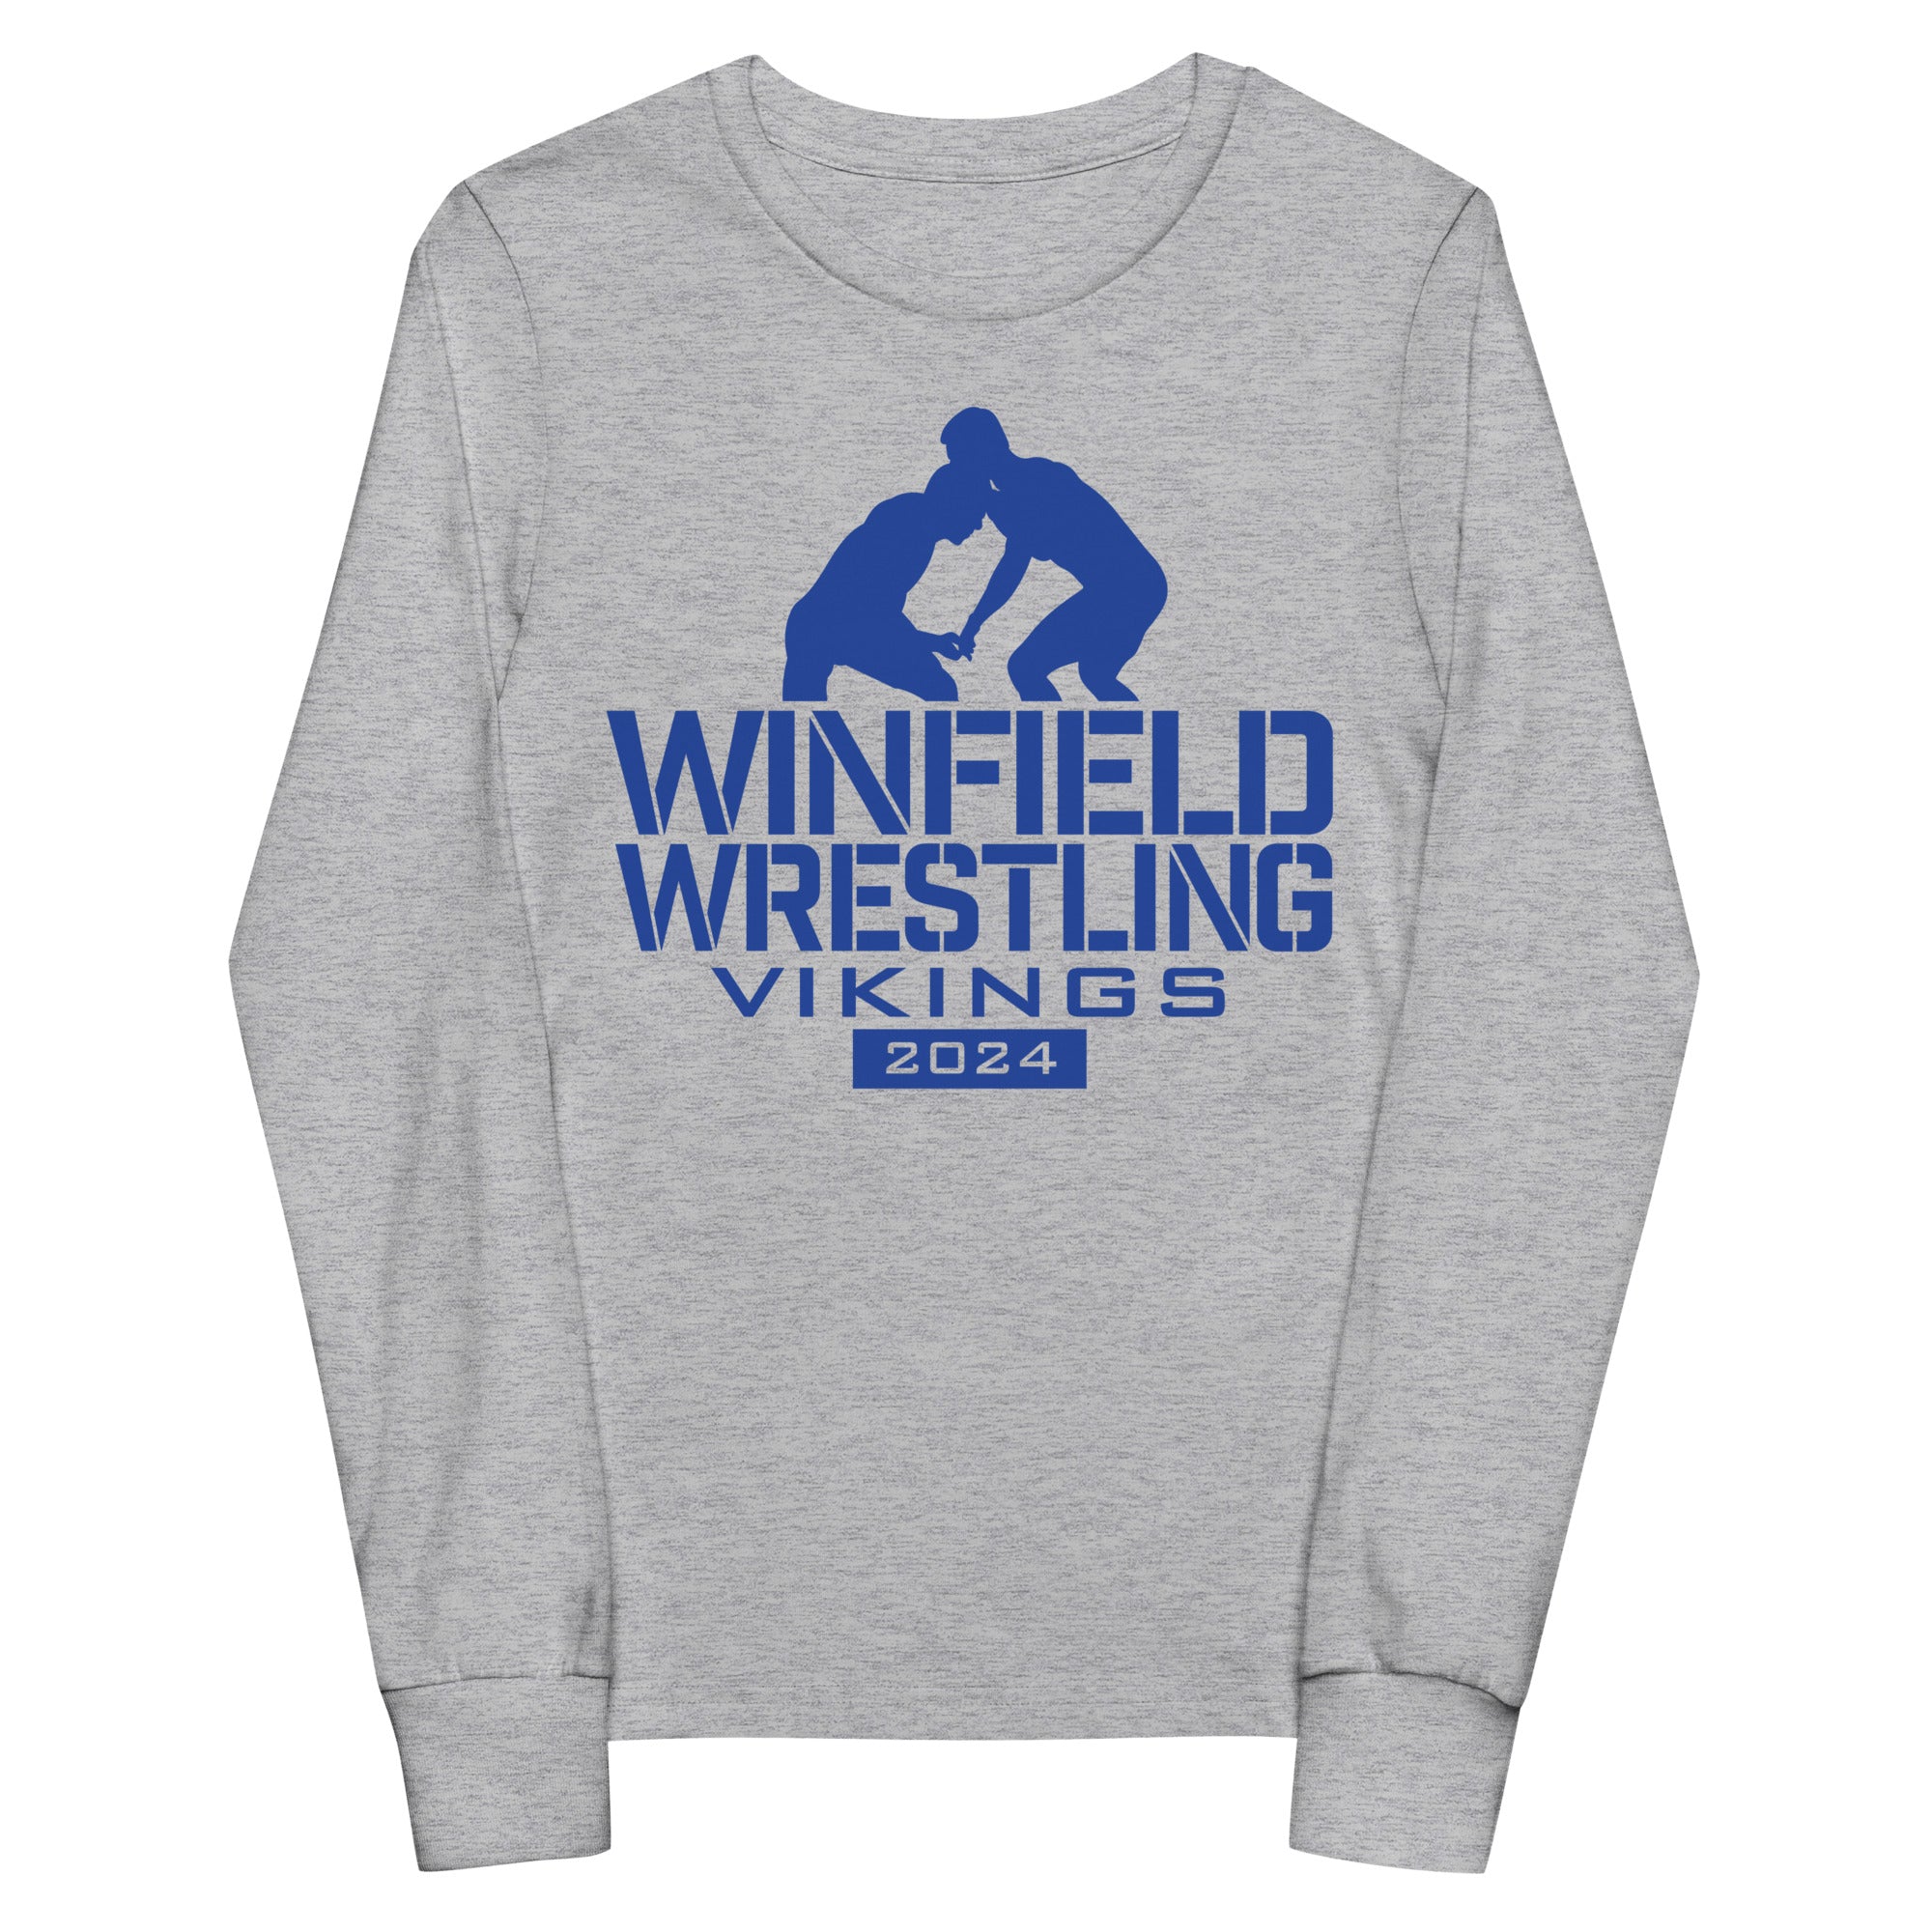 Winfield Wrestling Vikings 2024 Youth long sleeve tee